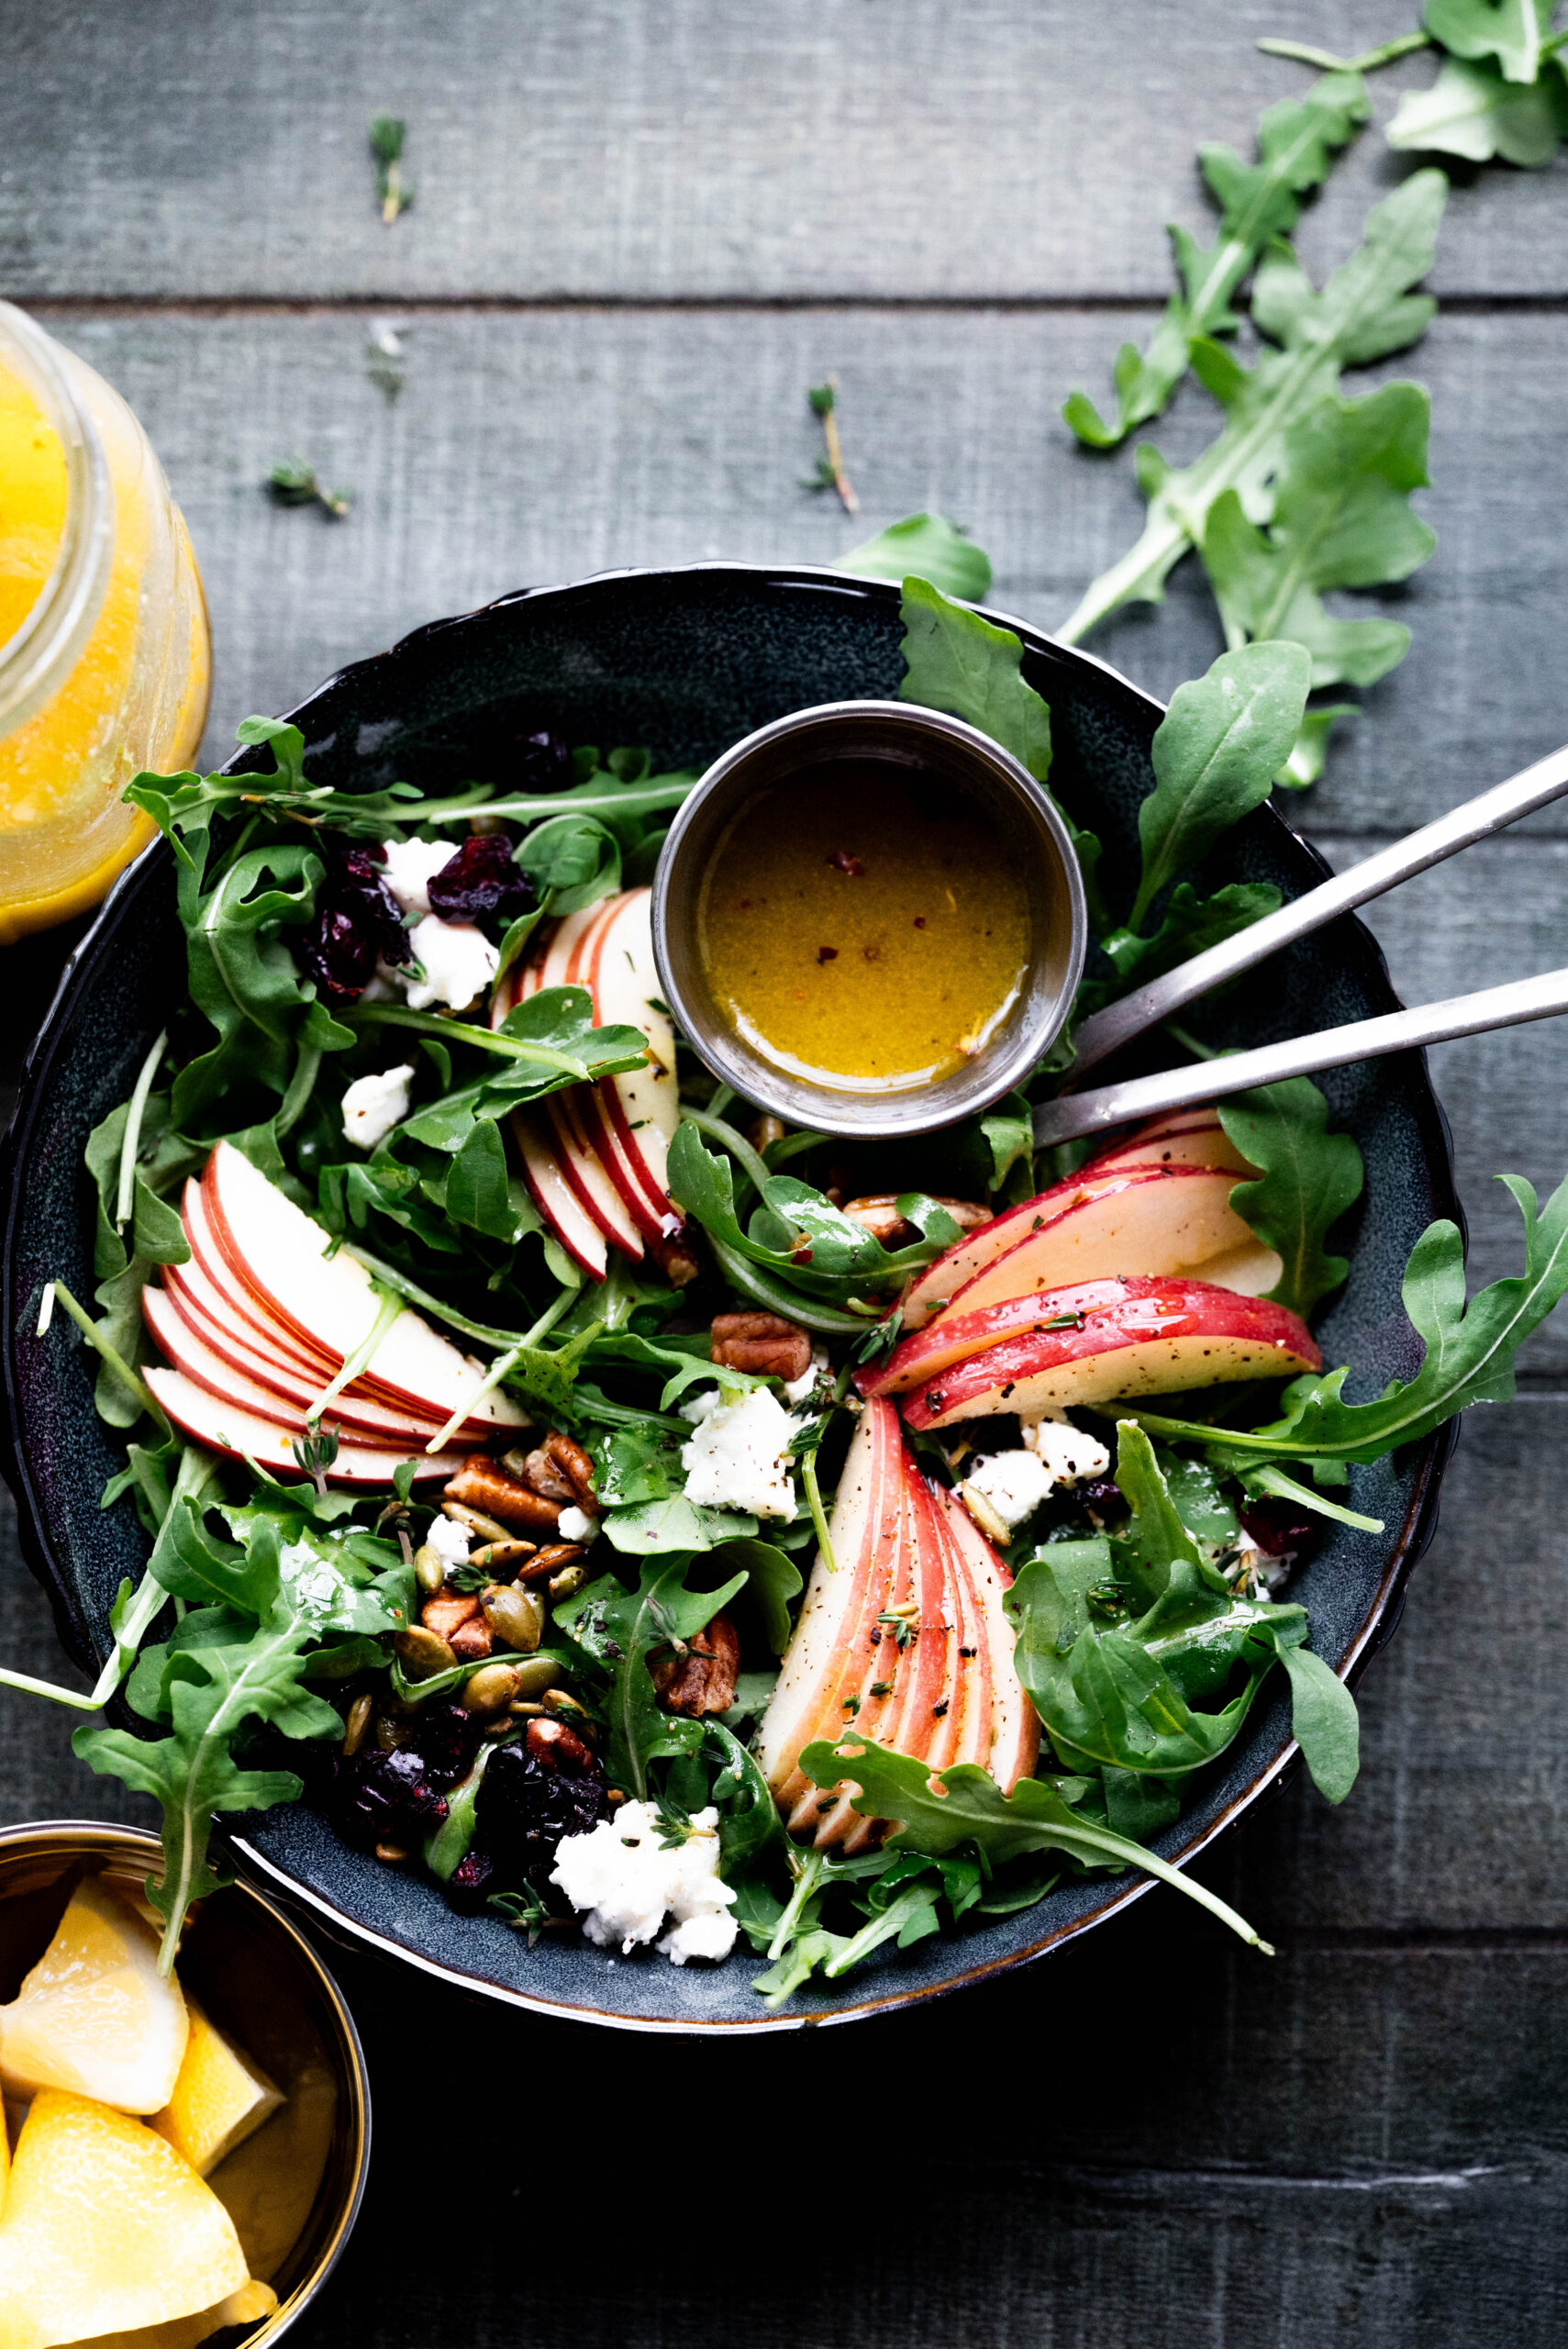 Apple Salad with Zesty Apple Cider Vinaigrette Dressing. 